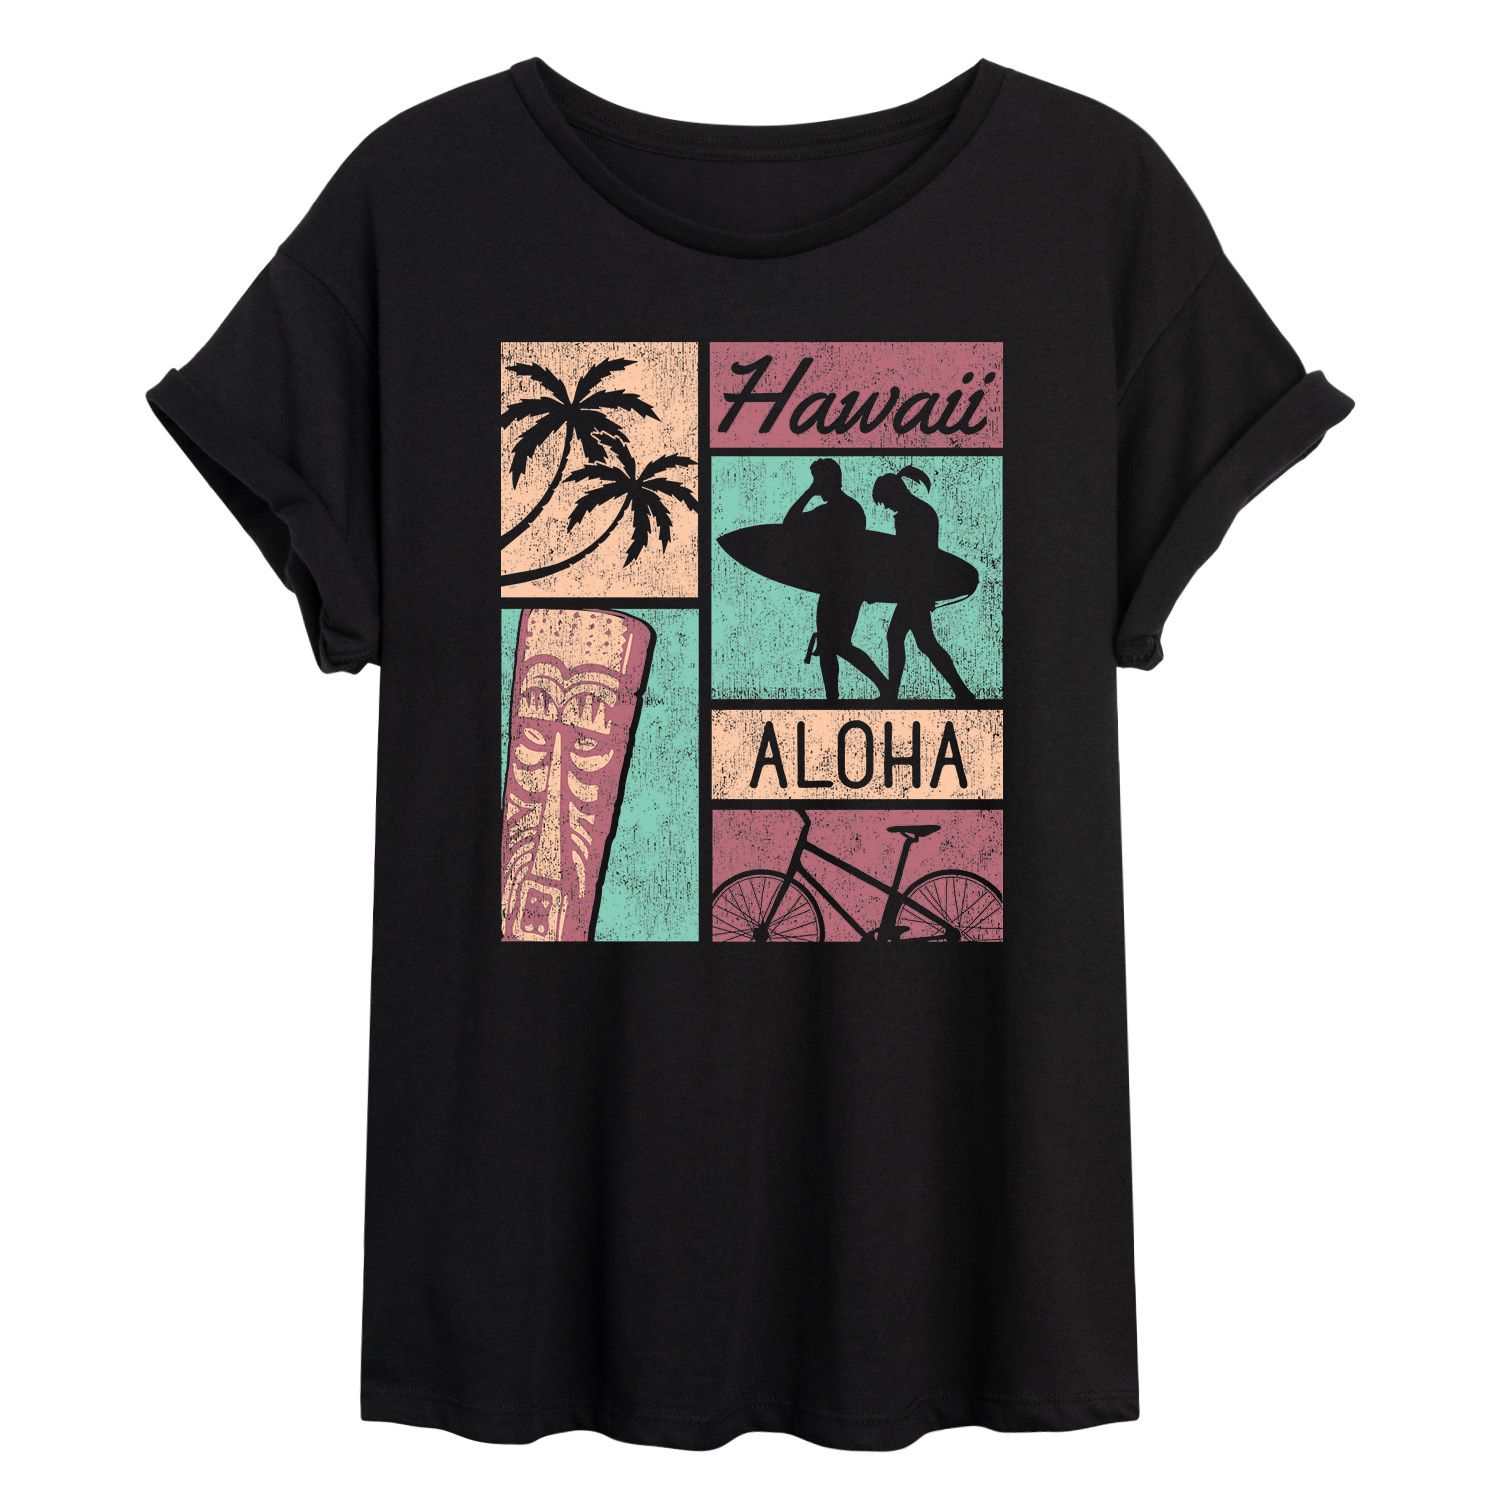 Детская футболка большого размера с рисунком Hawaii Aloha в стиле ретро Licensed Character японское аниме крутой женский свитшот в стиле ретро с забавным мультяшным графическим рисунком харадзюку большого размера пуловер унисек